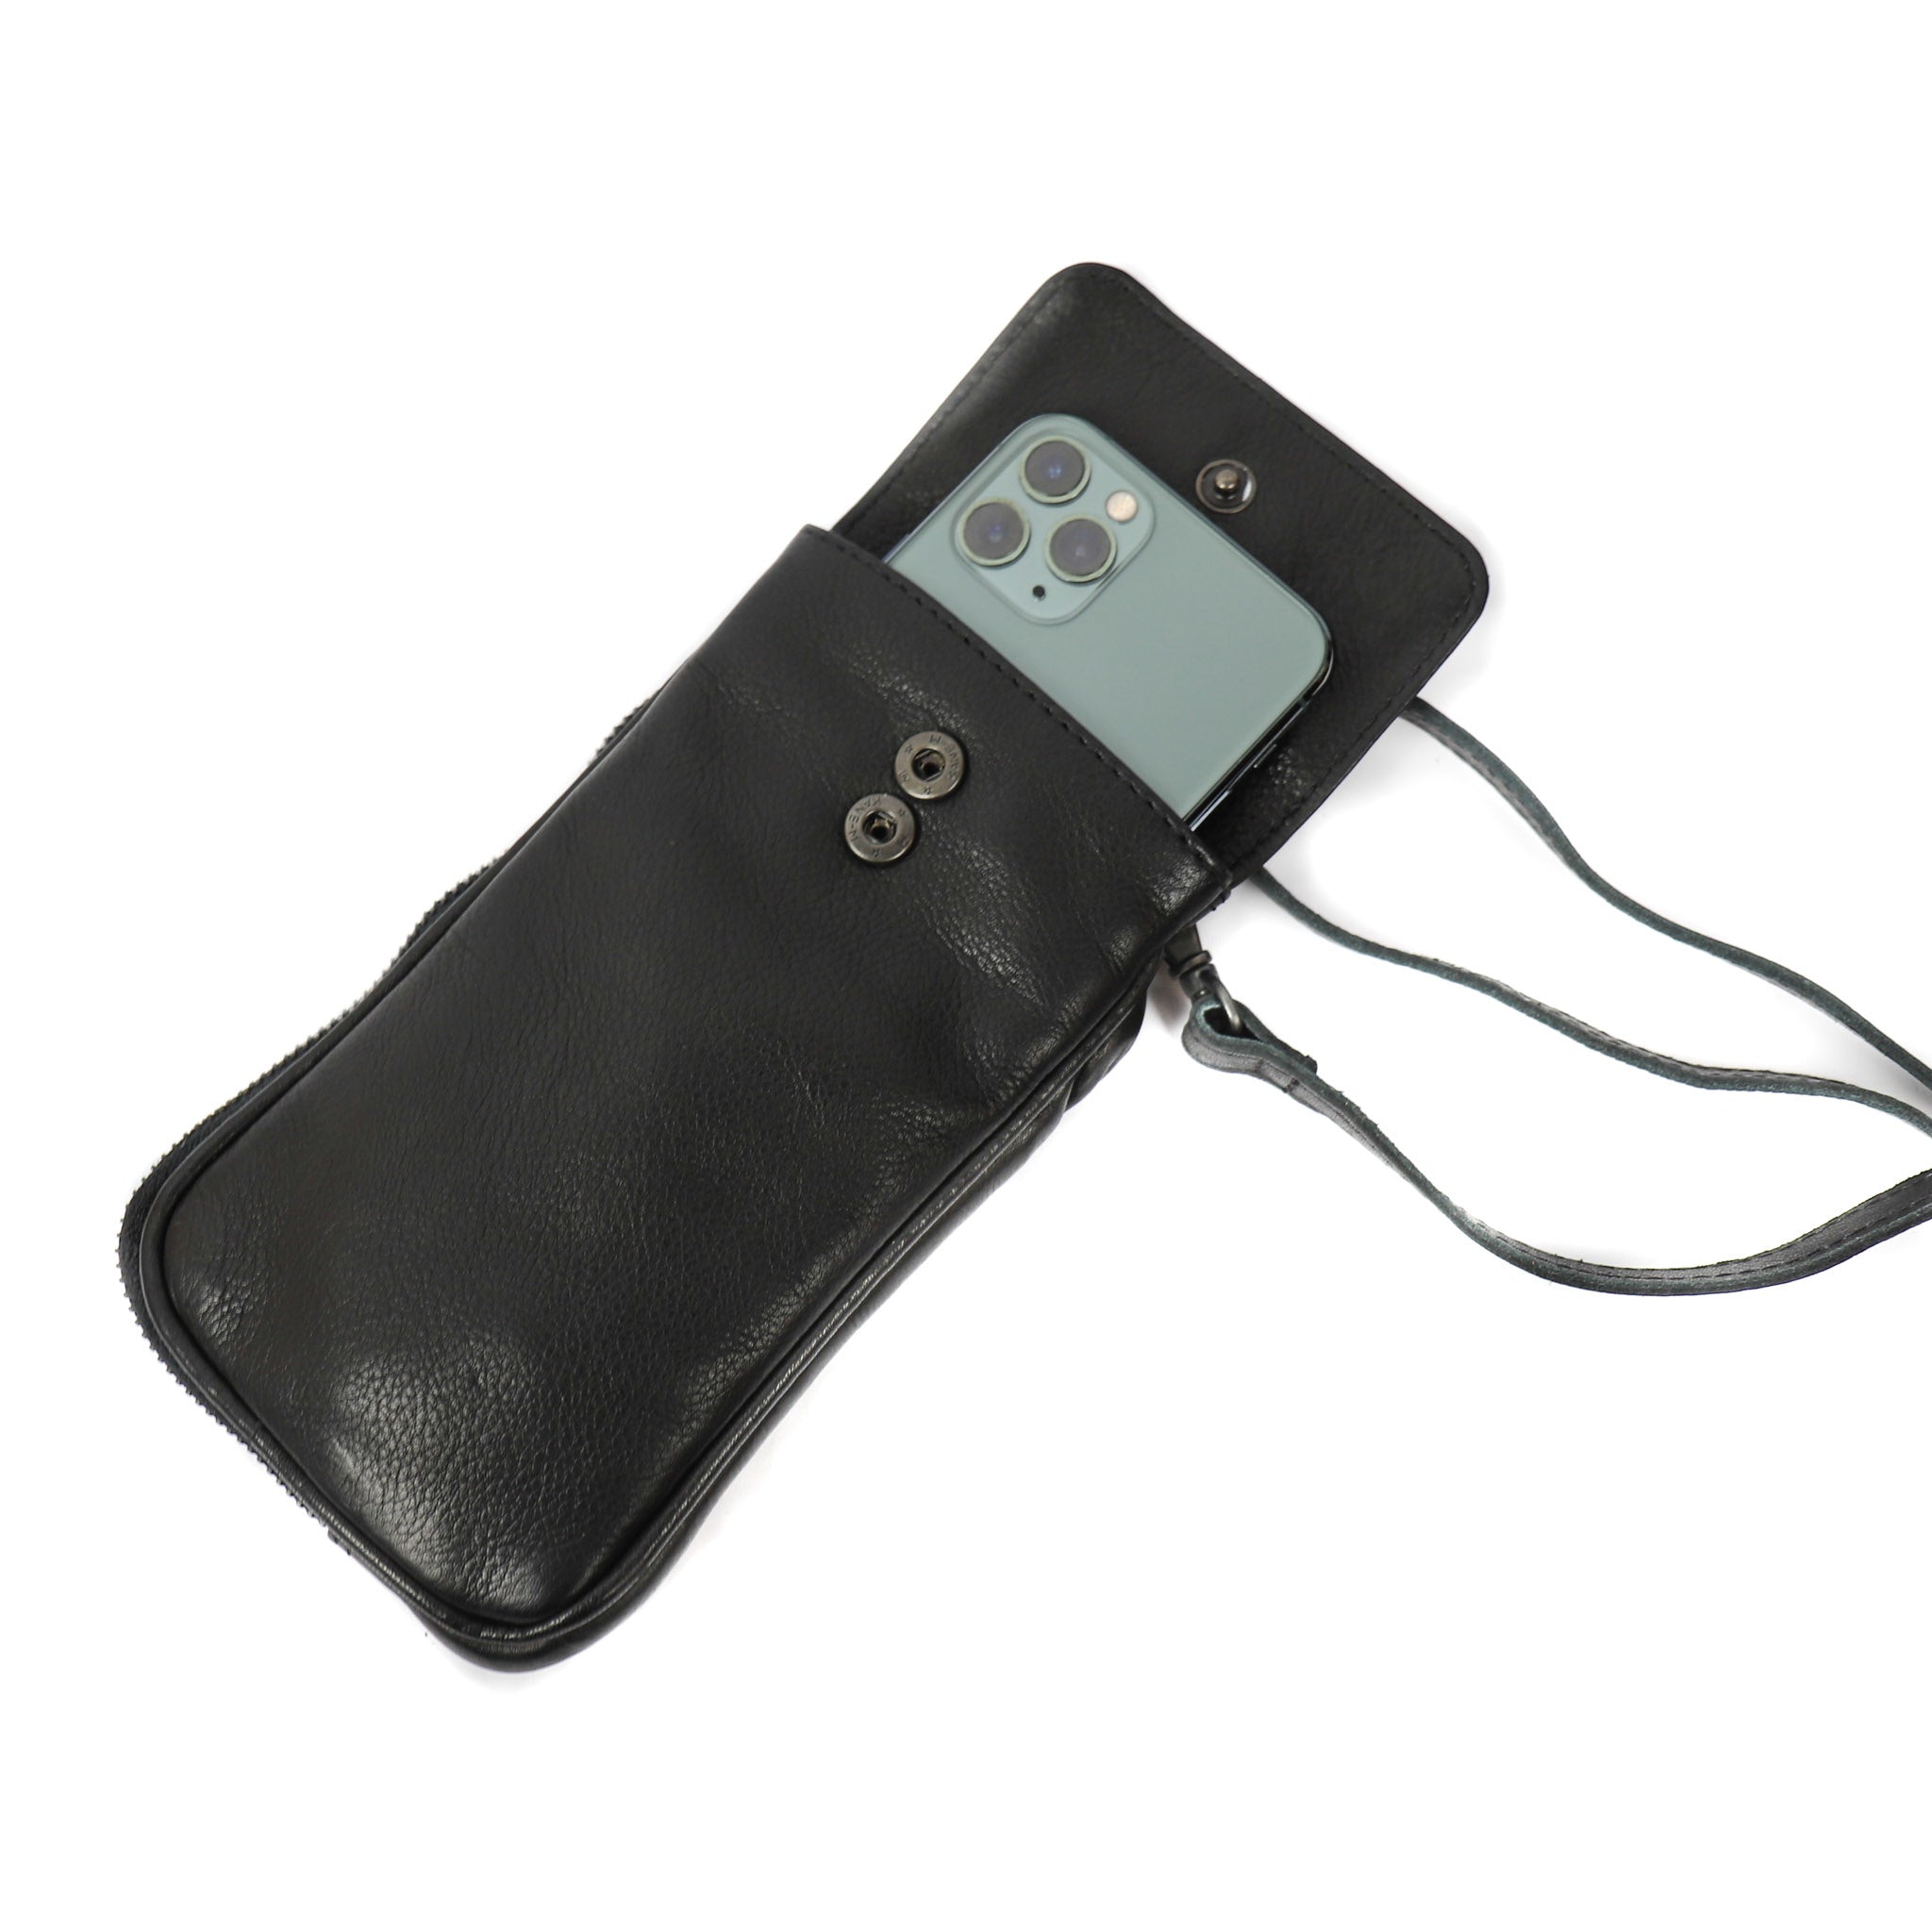 Phone bag 'Ahana' black - CP 2106